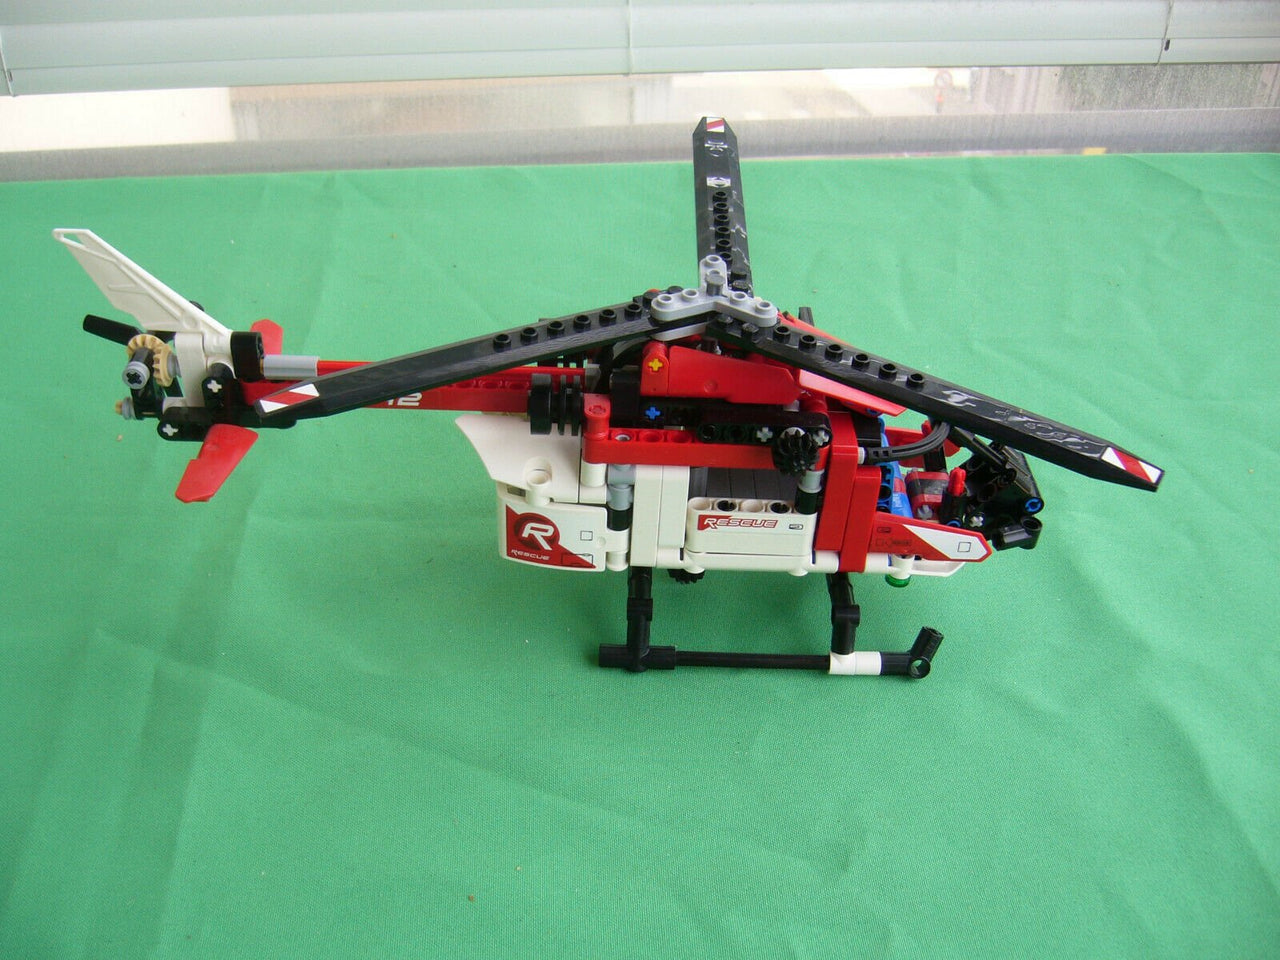 42092 LEGO Technic Helicóptero Rescue (325 Piezas) - CAT SERVICE PERU S.A.C.